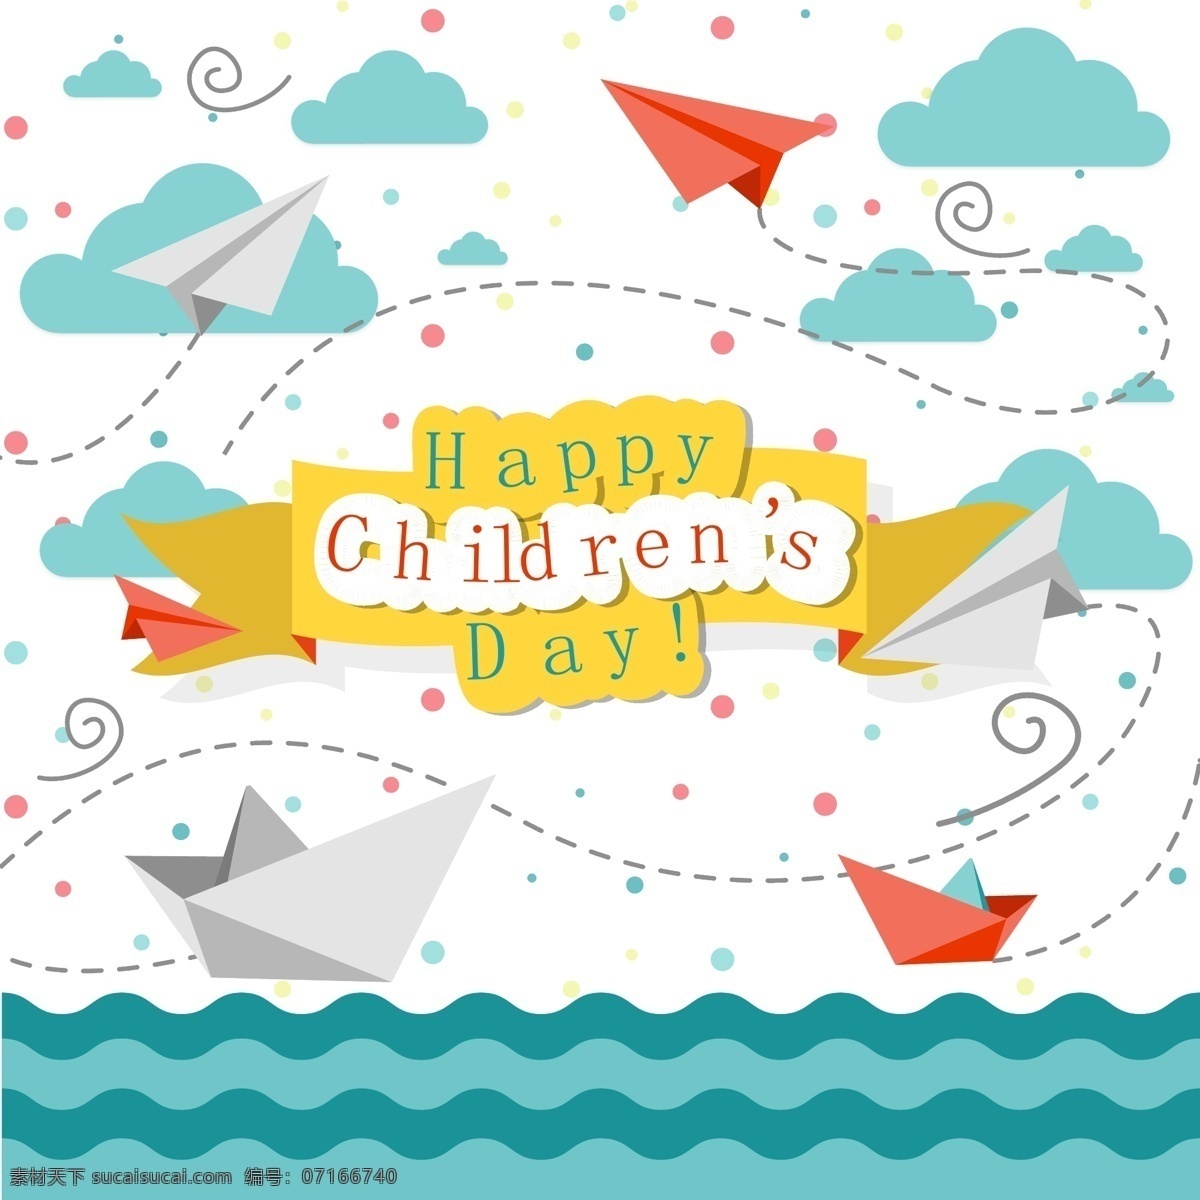 创意 纸 飞机 纸船 儿童节 贺卡 矢量图 云朵 happy childrens day 纸飞机 折纸 名片卡片